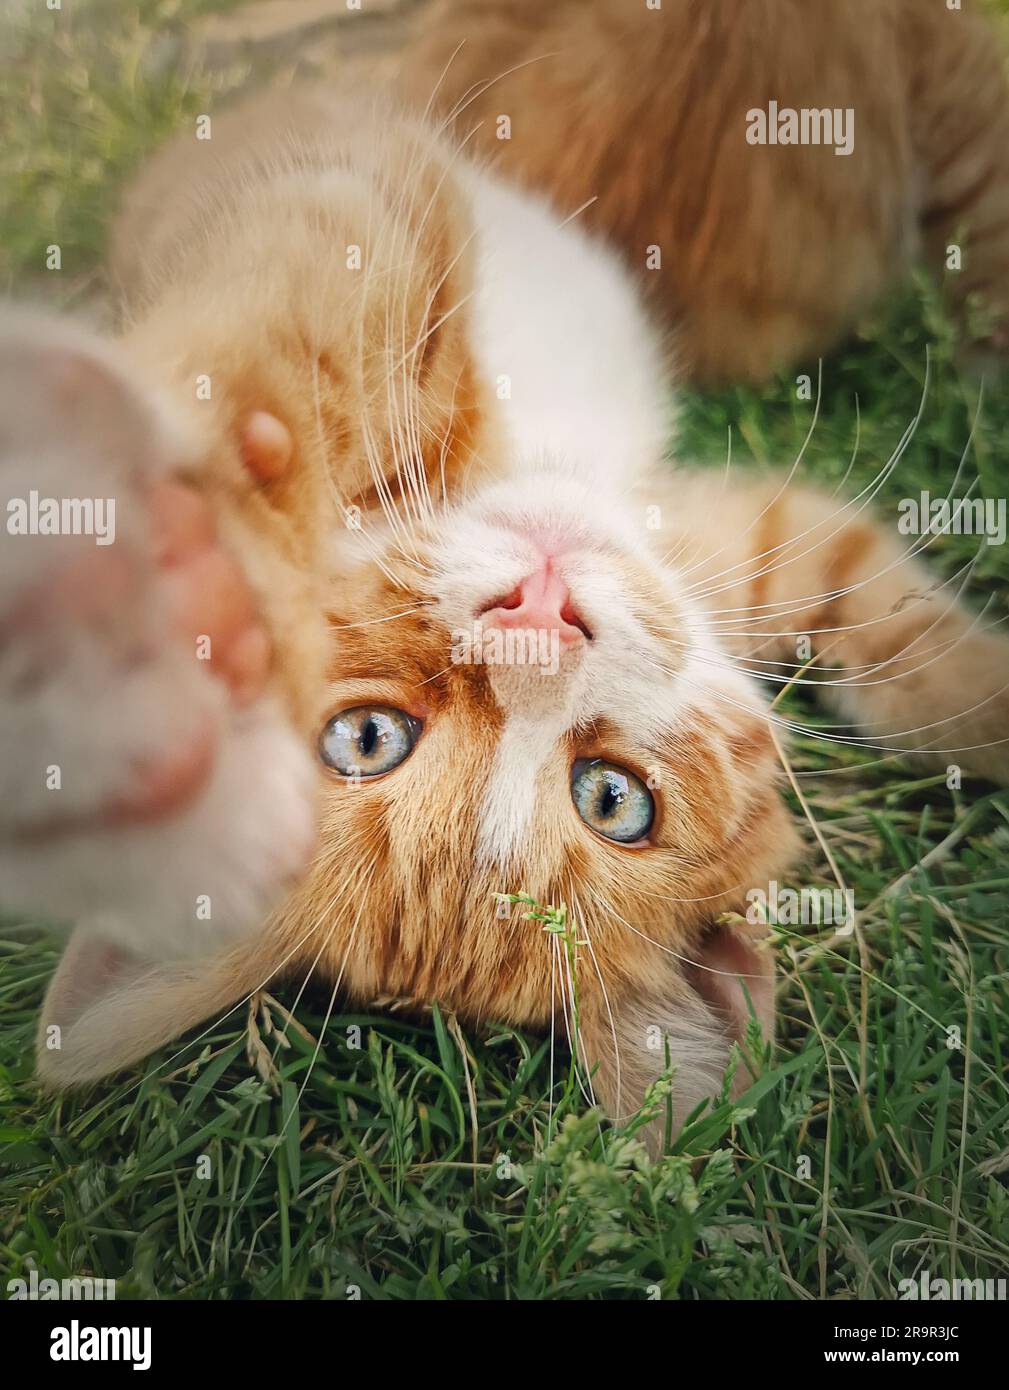 Chaton orange espiègle couché à l'envers sur l'herbe verte. Petit chat de gingembre mignon scène à l'extérieur dans la nature Banque D'Images